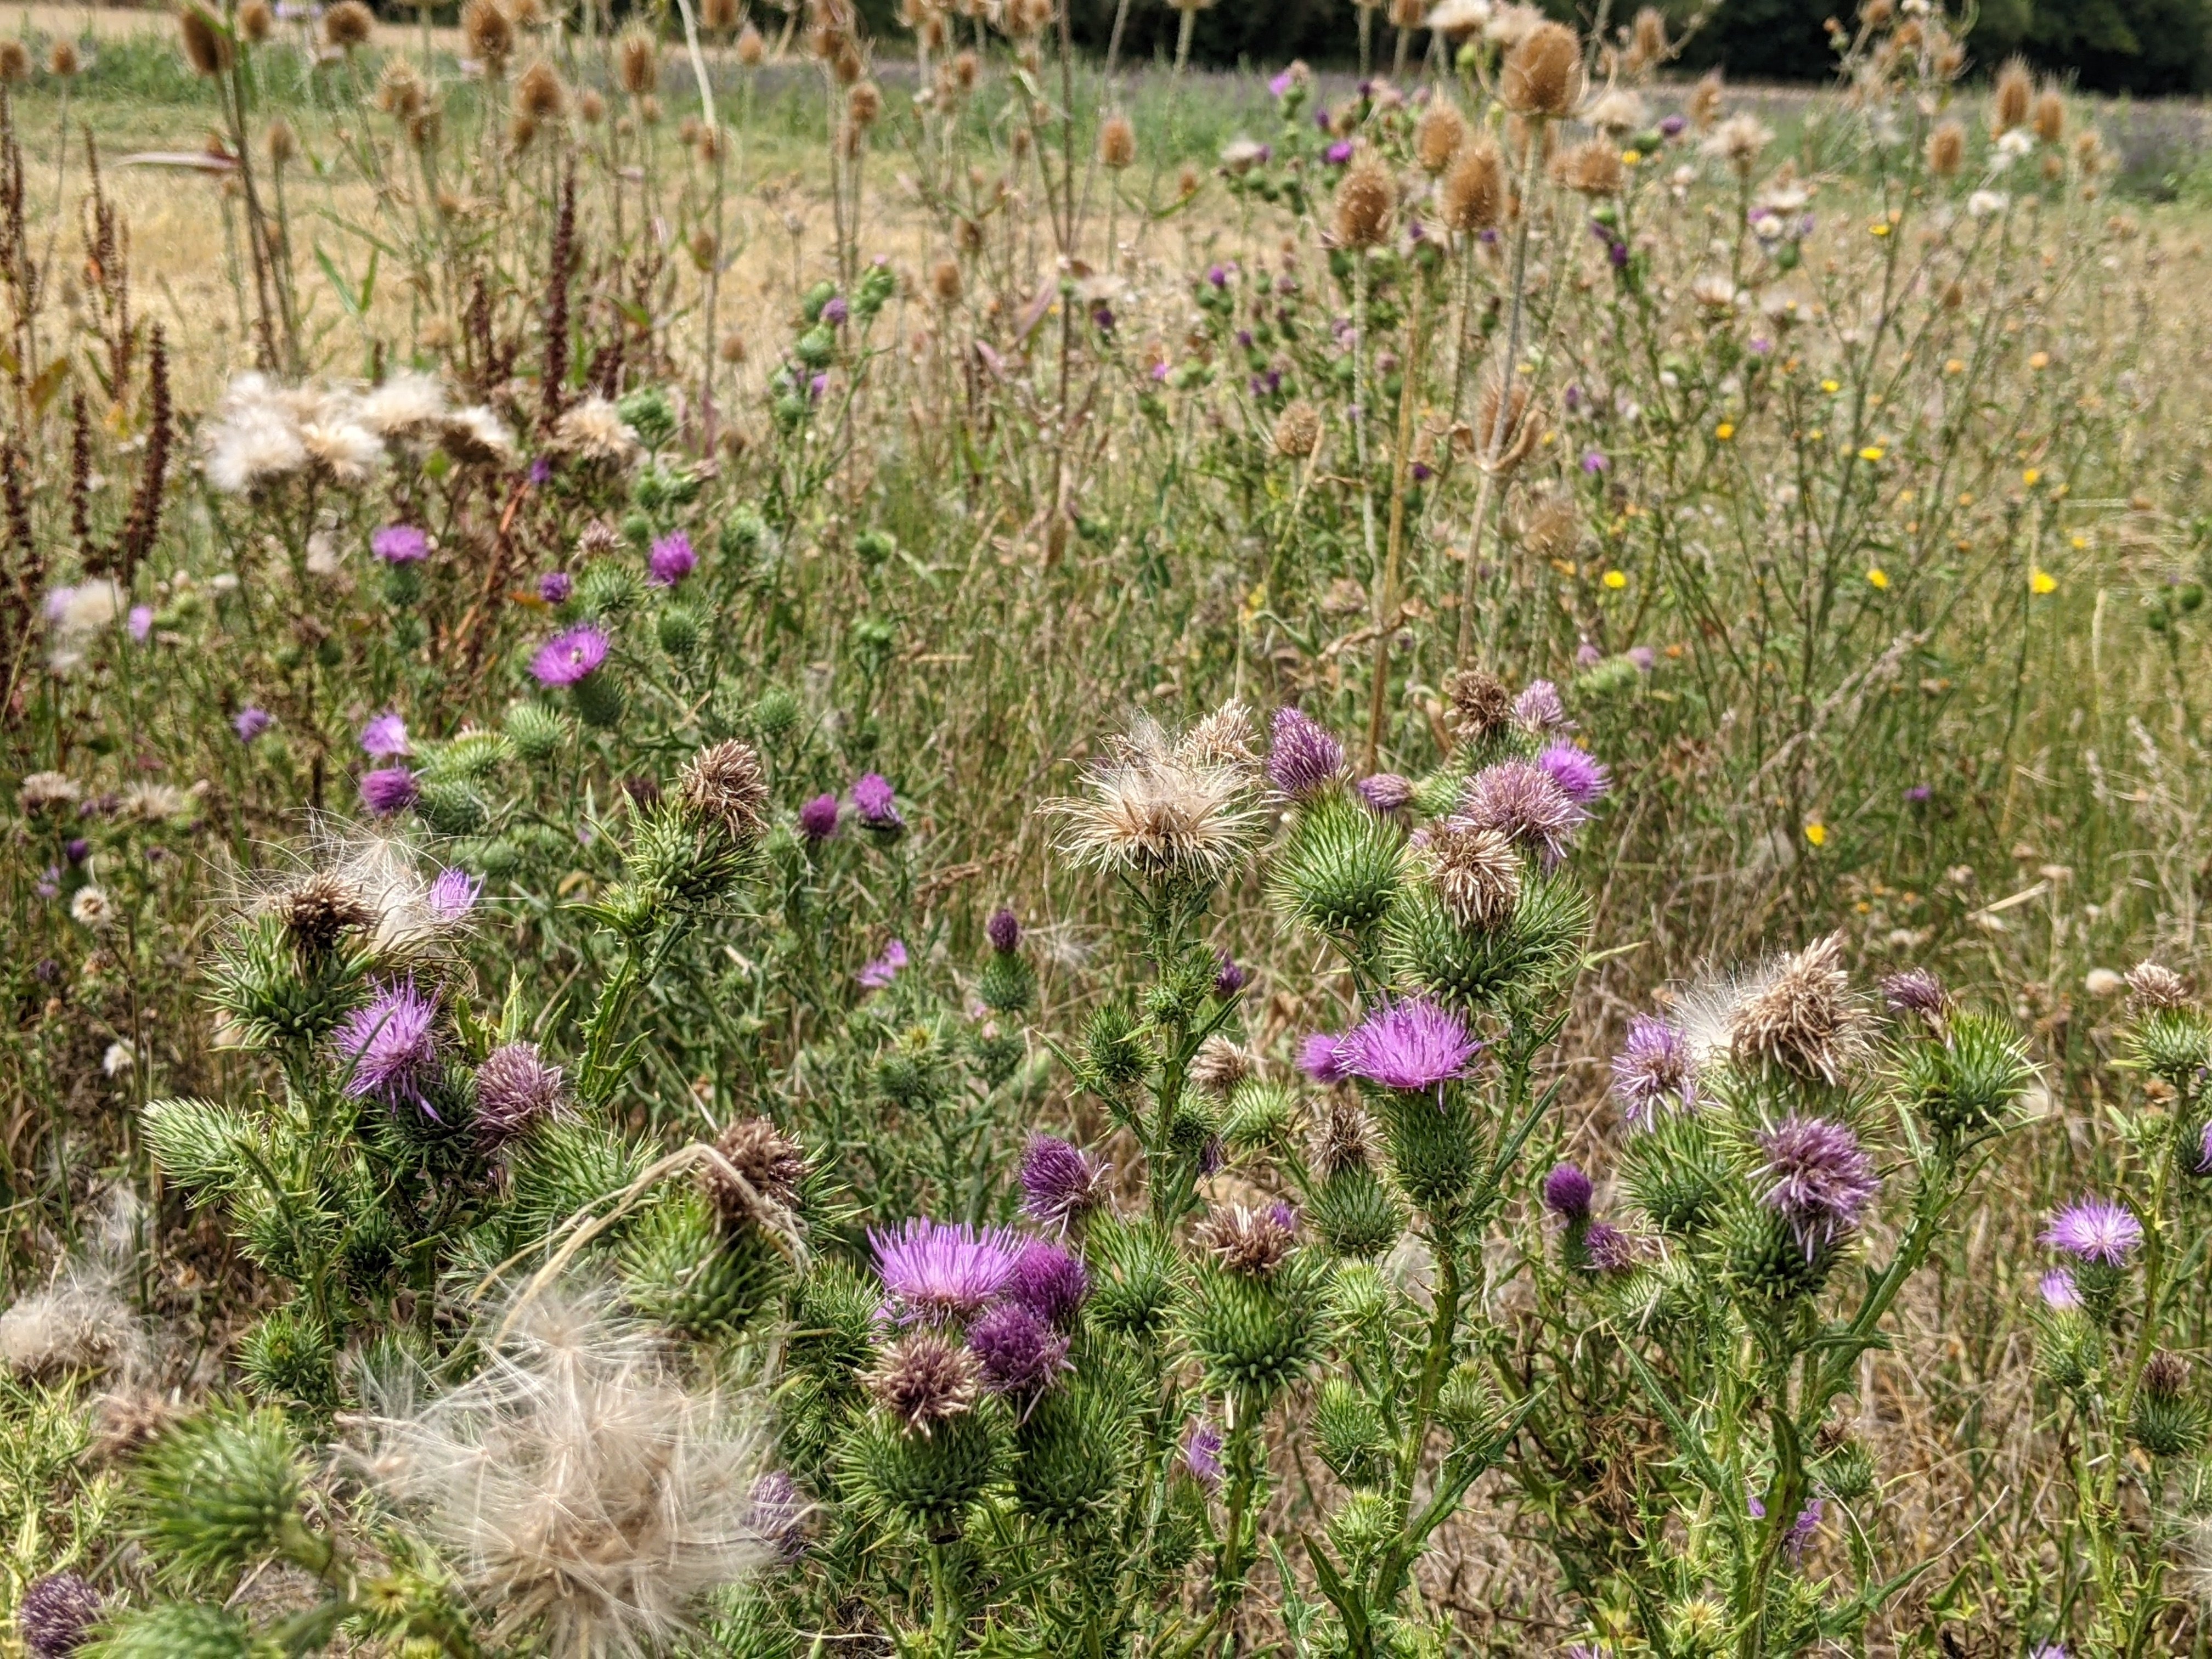 Le chardon marie, une plante courante au bord des champs de la Beauce, contient un actif contre le psoriasis. LP/Stéphane Frachet